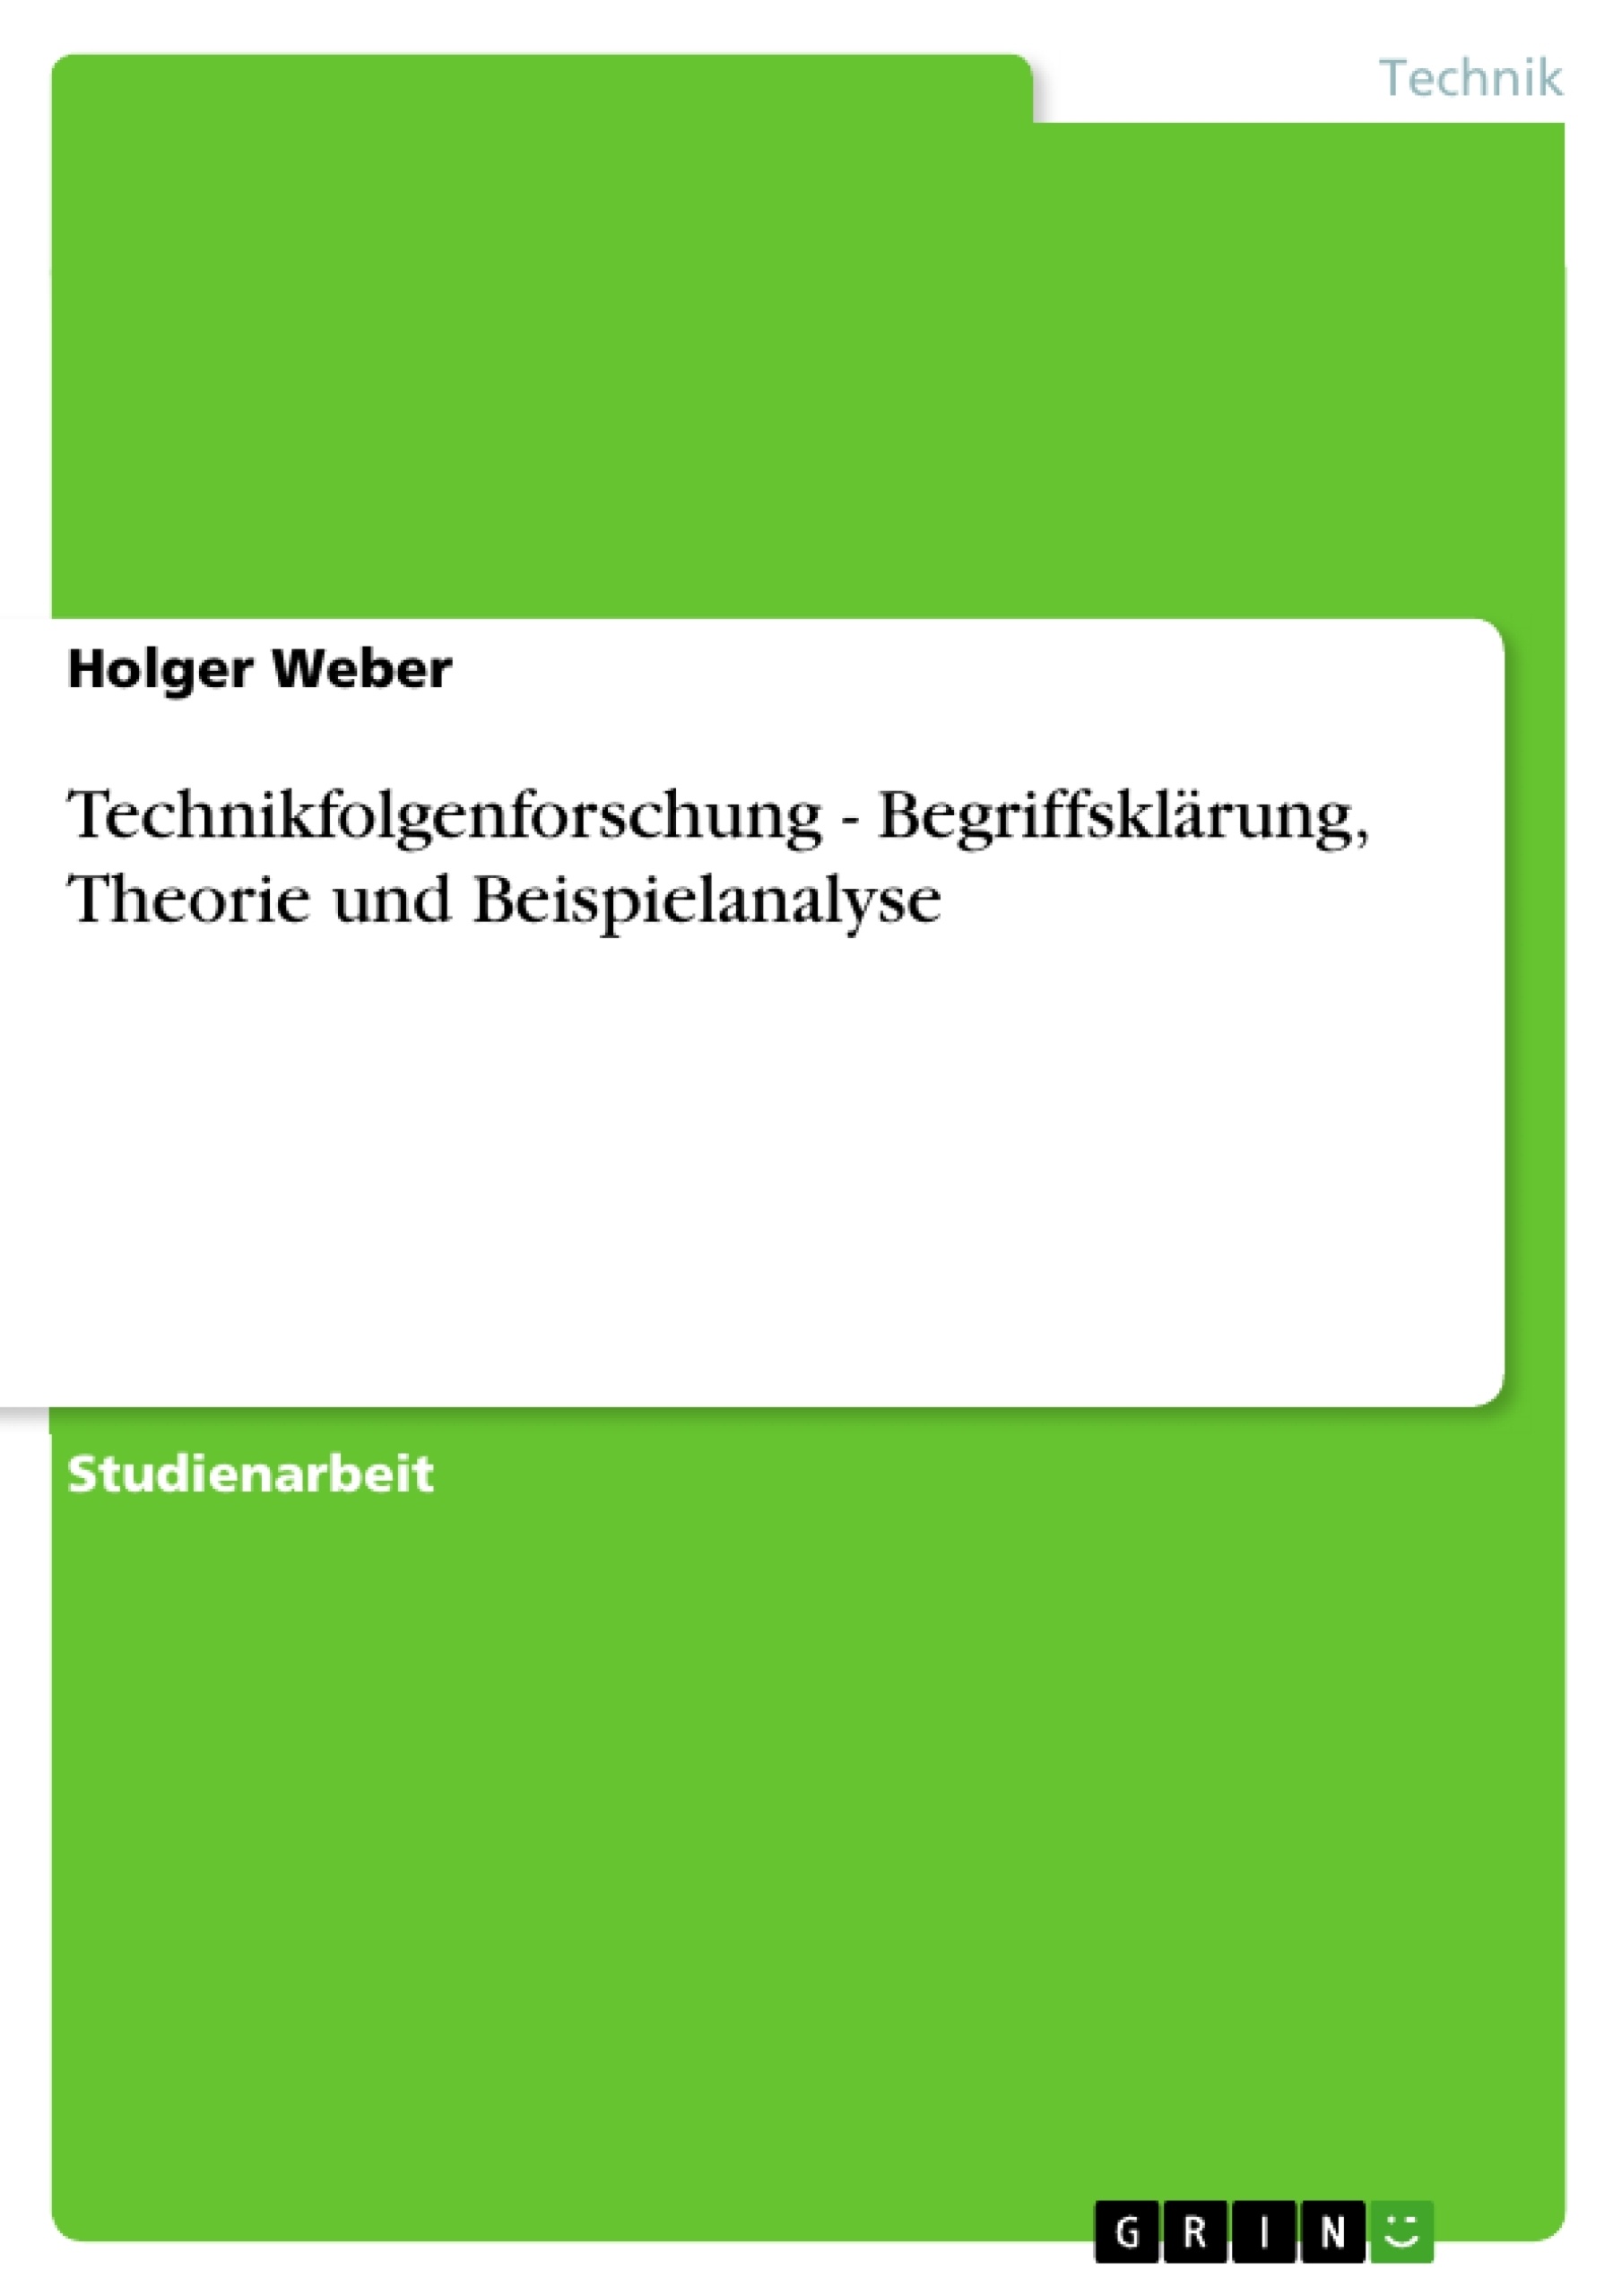 Title: Technikfolgenforschung - Begriffsklärung, Theorie und Beispielanalyse